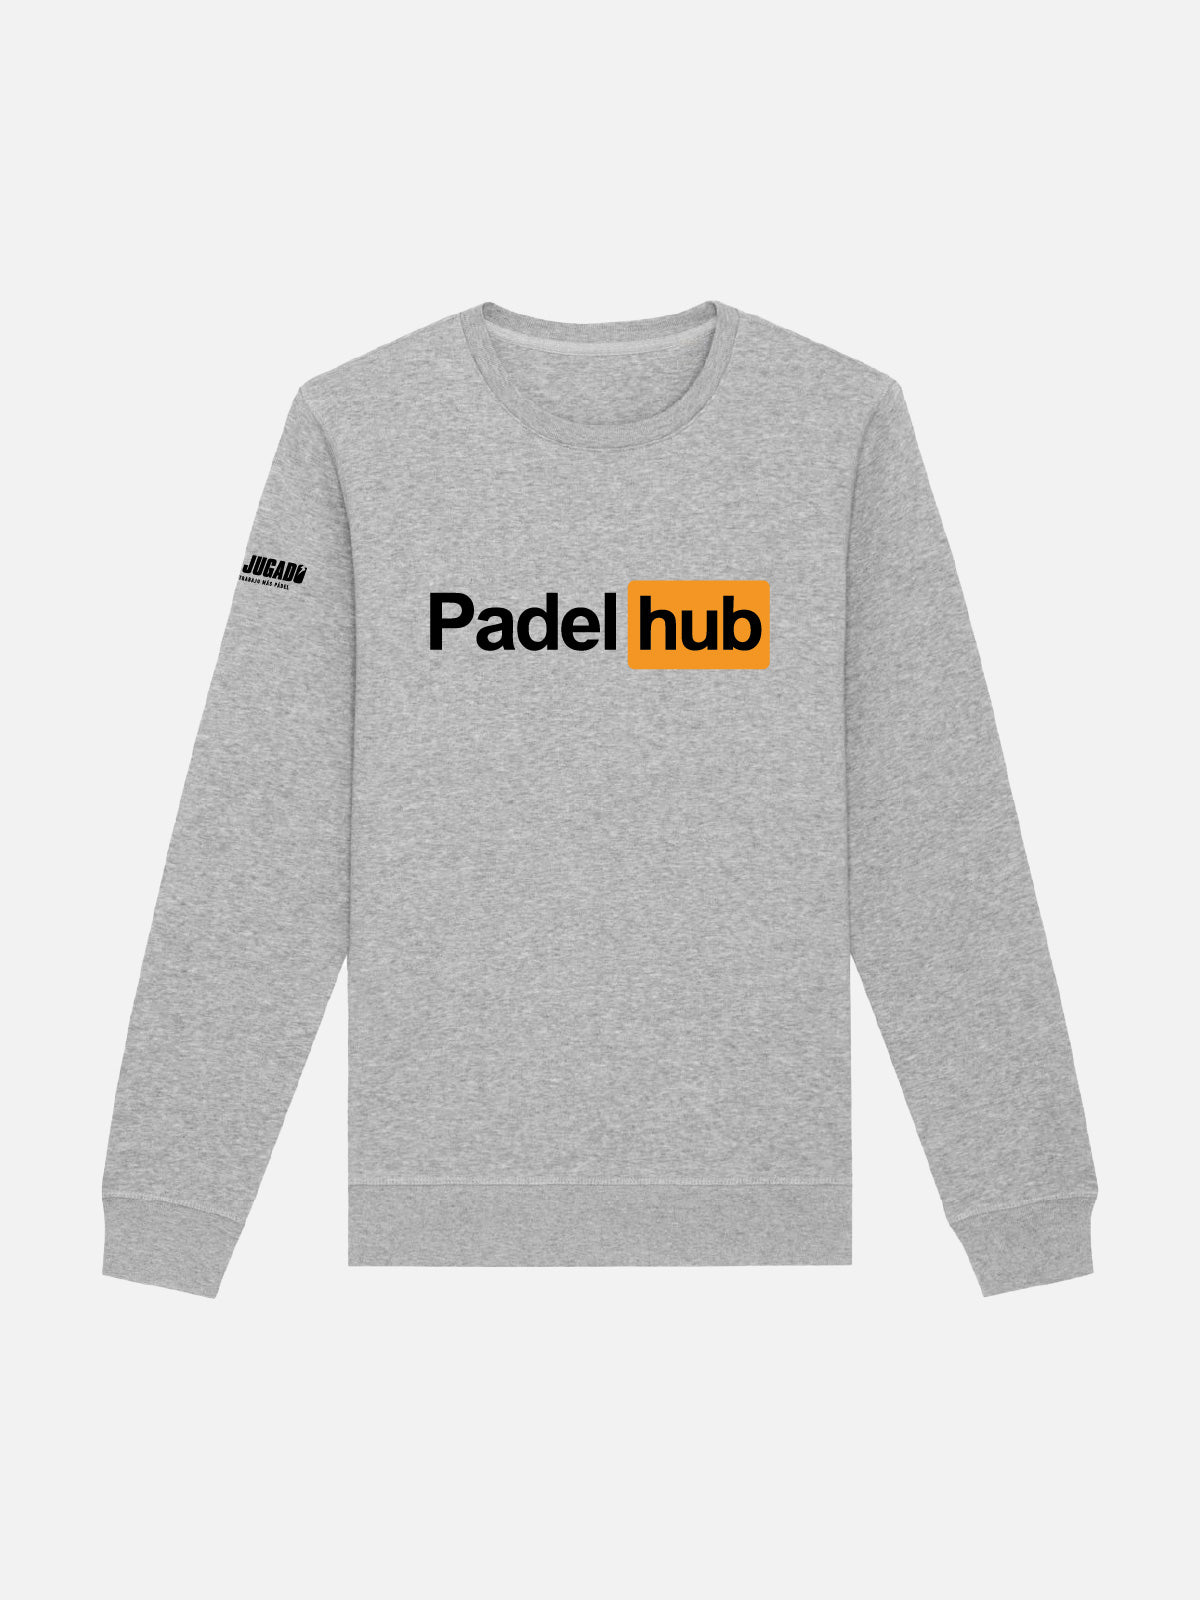 Unisex Fun Sweatshirt - Padel Hub